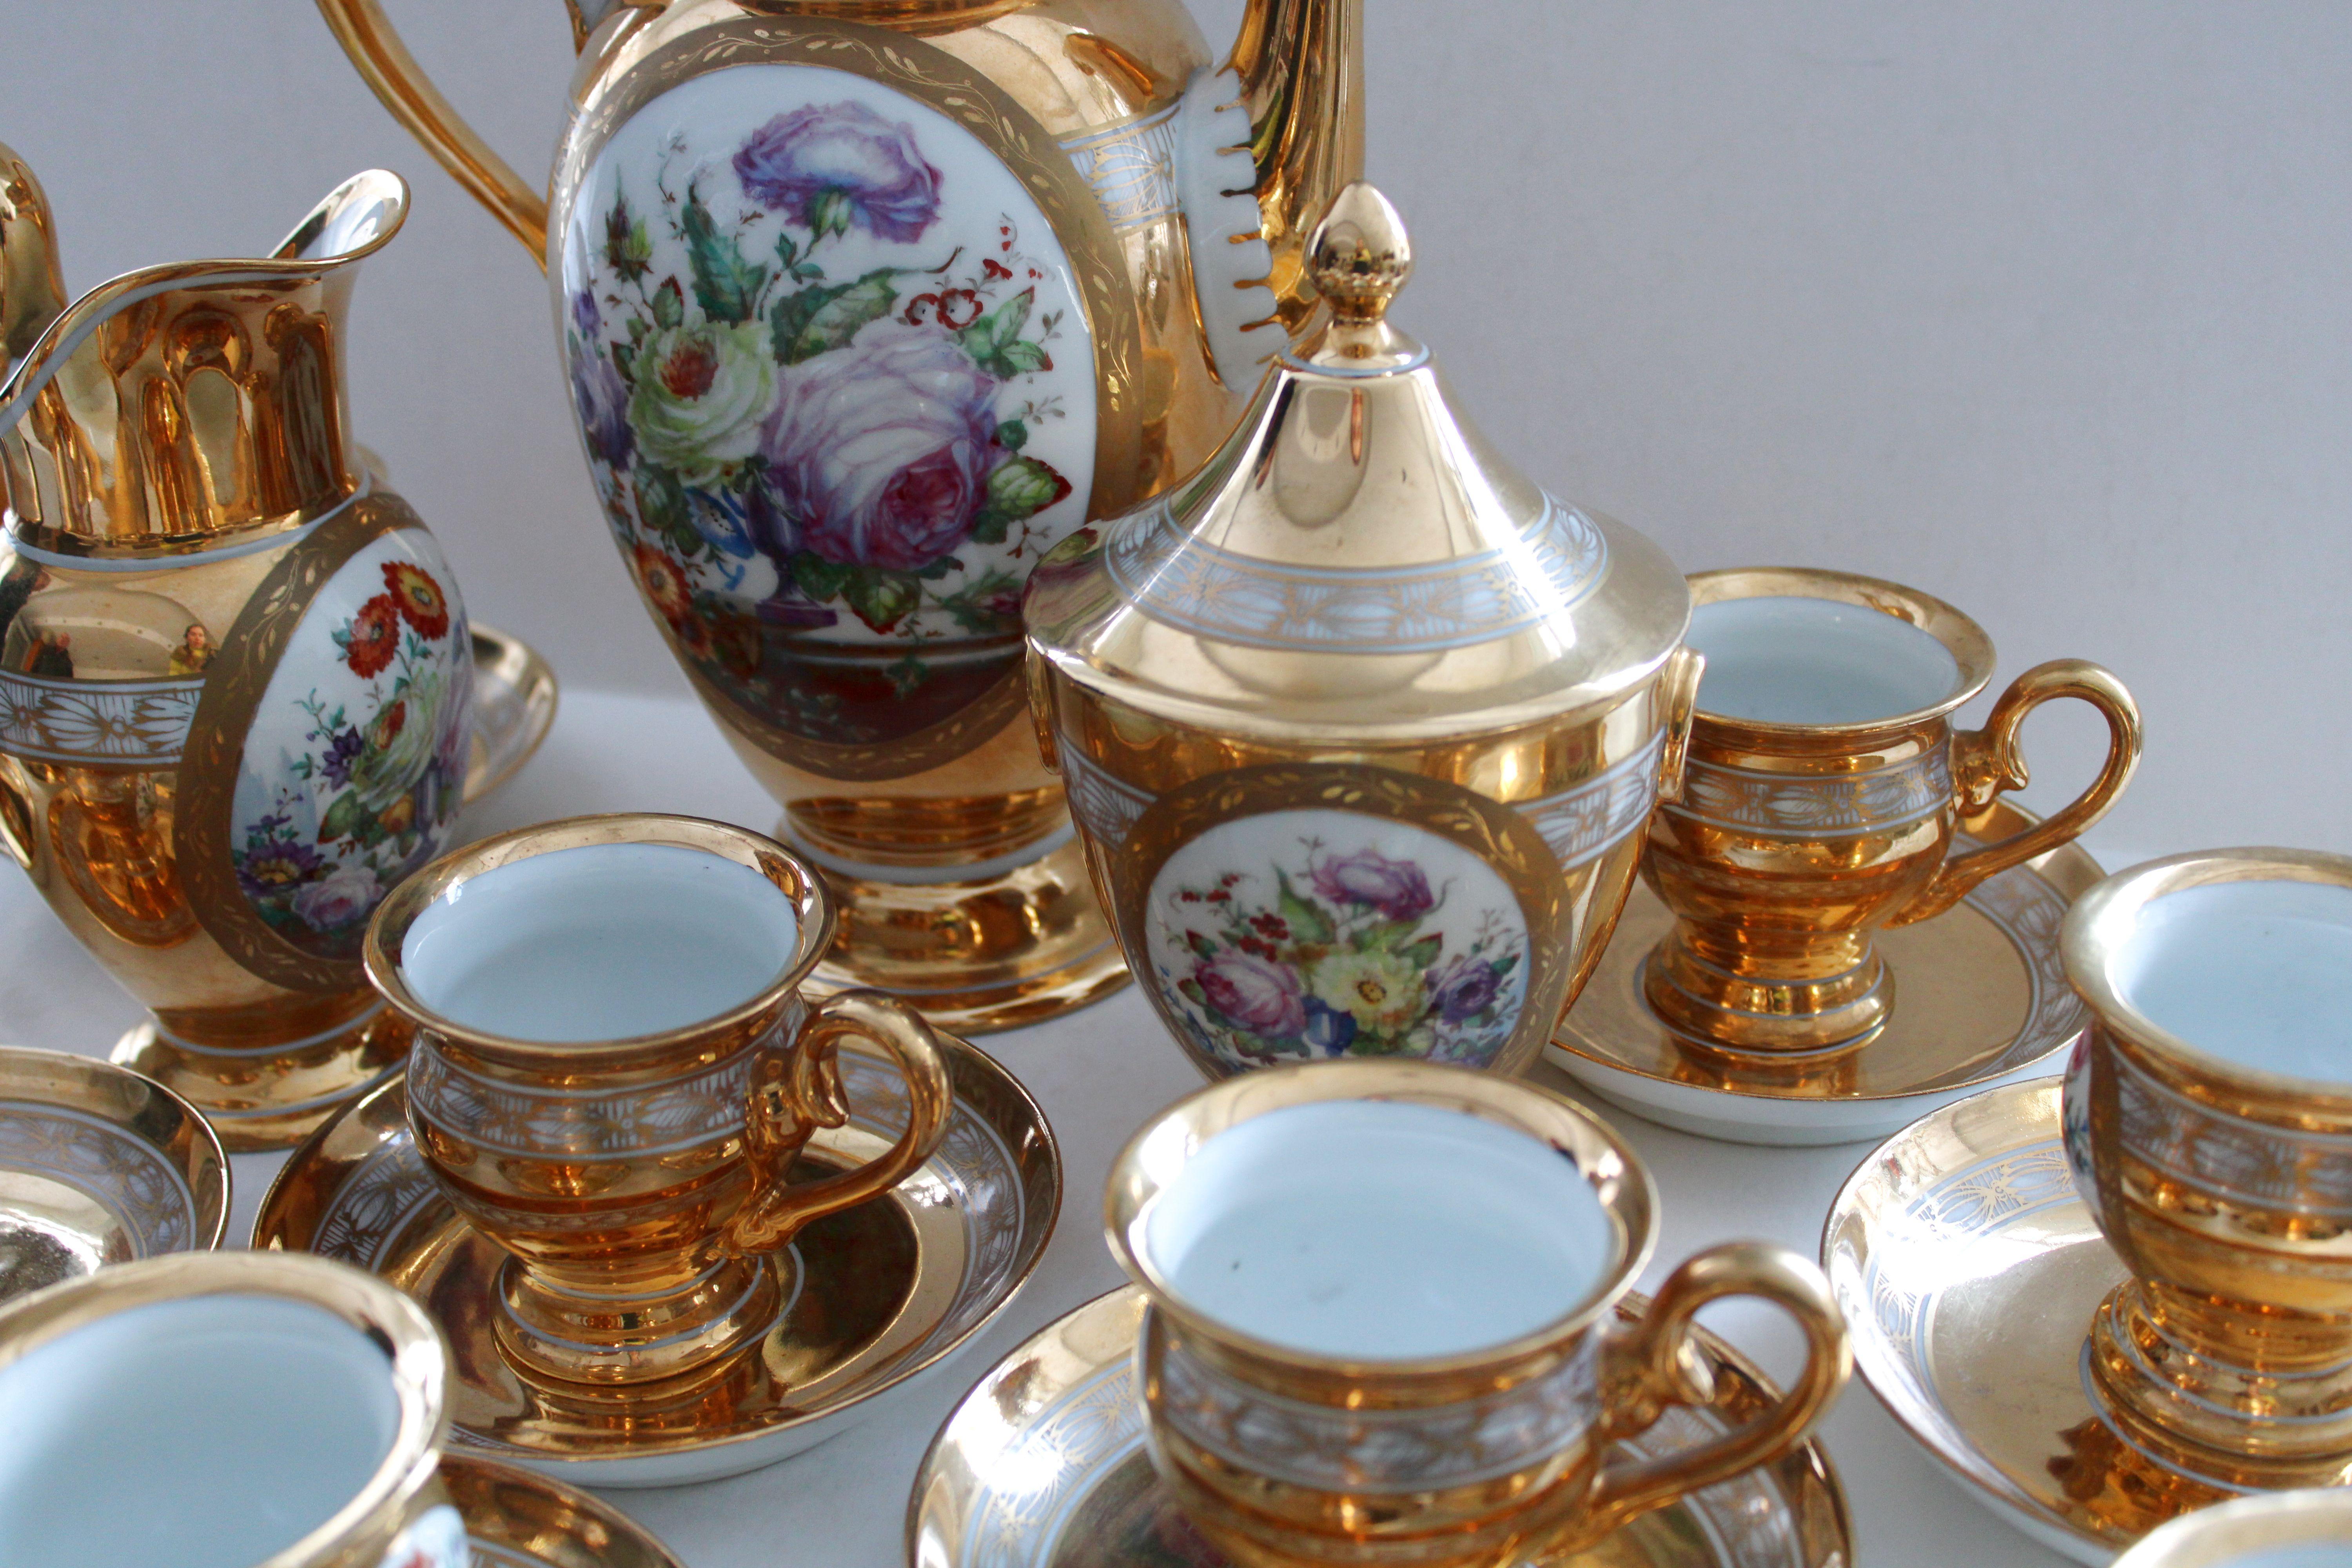 Tea Set for 12 persons 1949, porcelain, gilding, initials G.D.

Cup h 7.5 cm; d 7.3 cm
Dish with lid h 17 cm
Creamer h 18.5 cm
Teapot h 27.5 cm